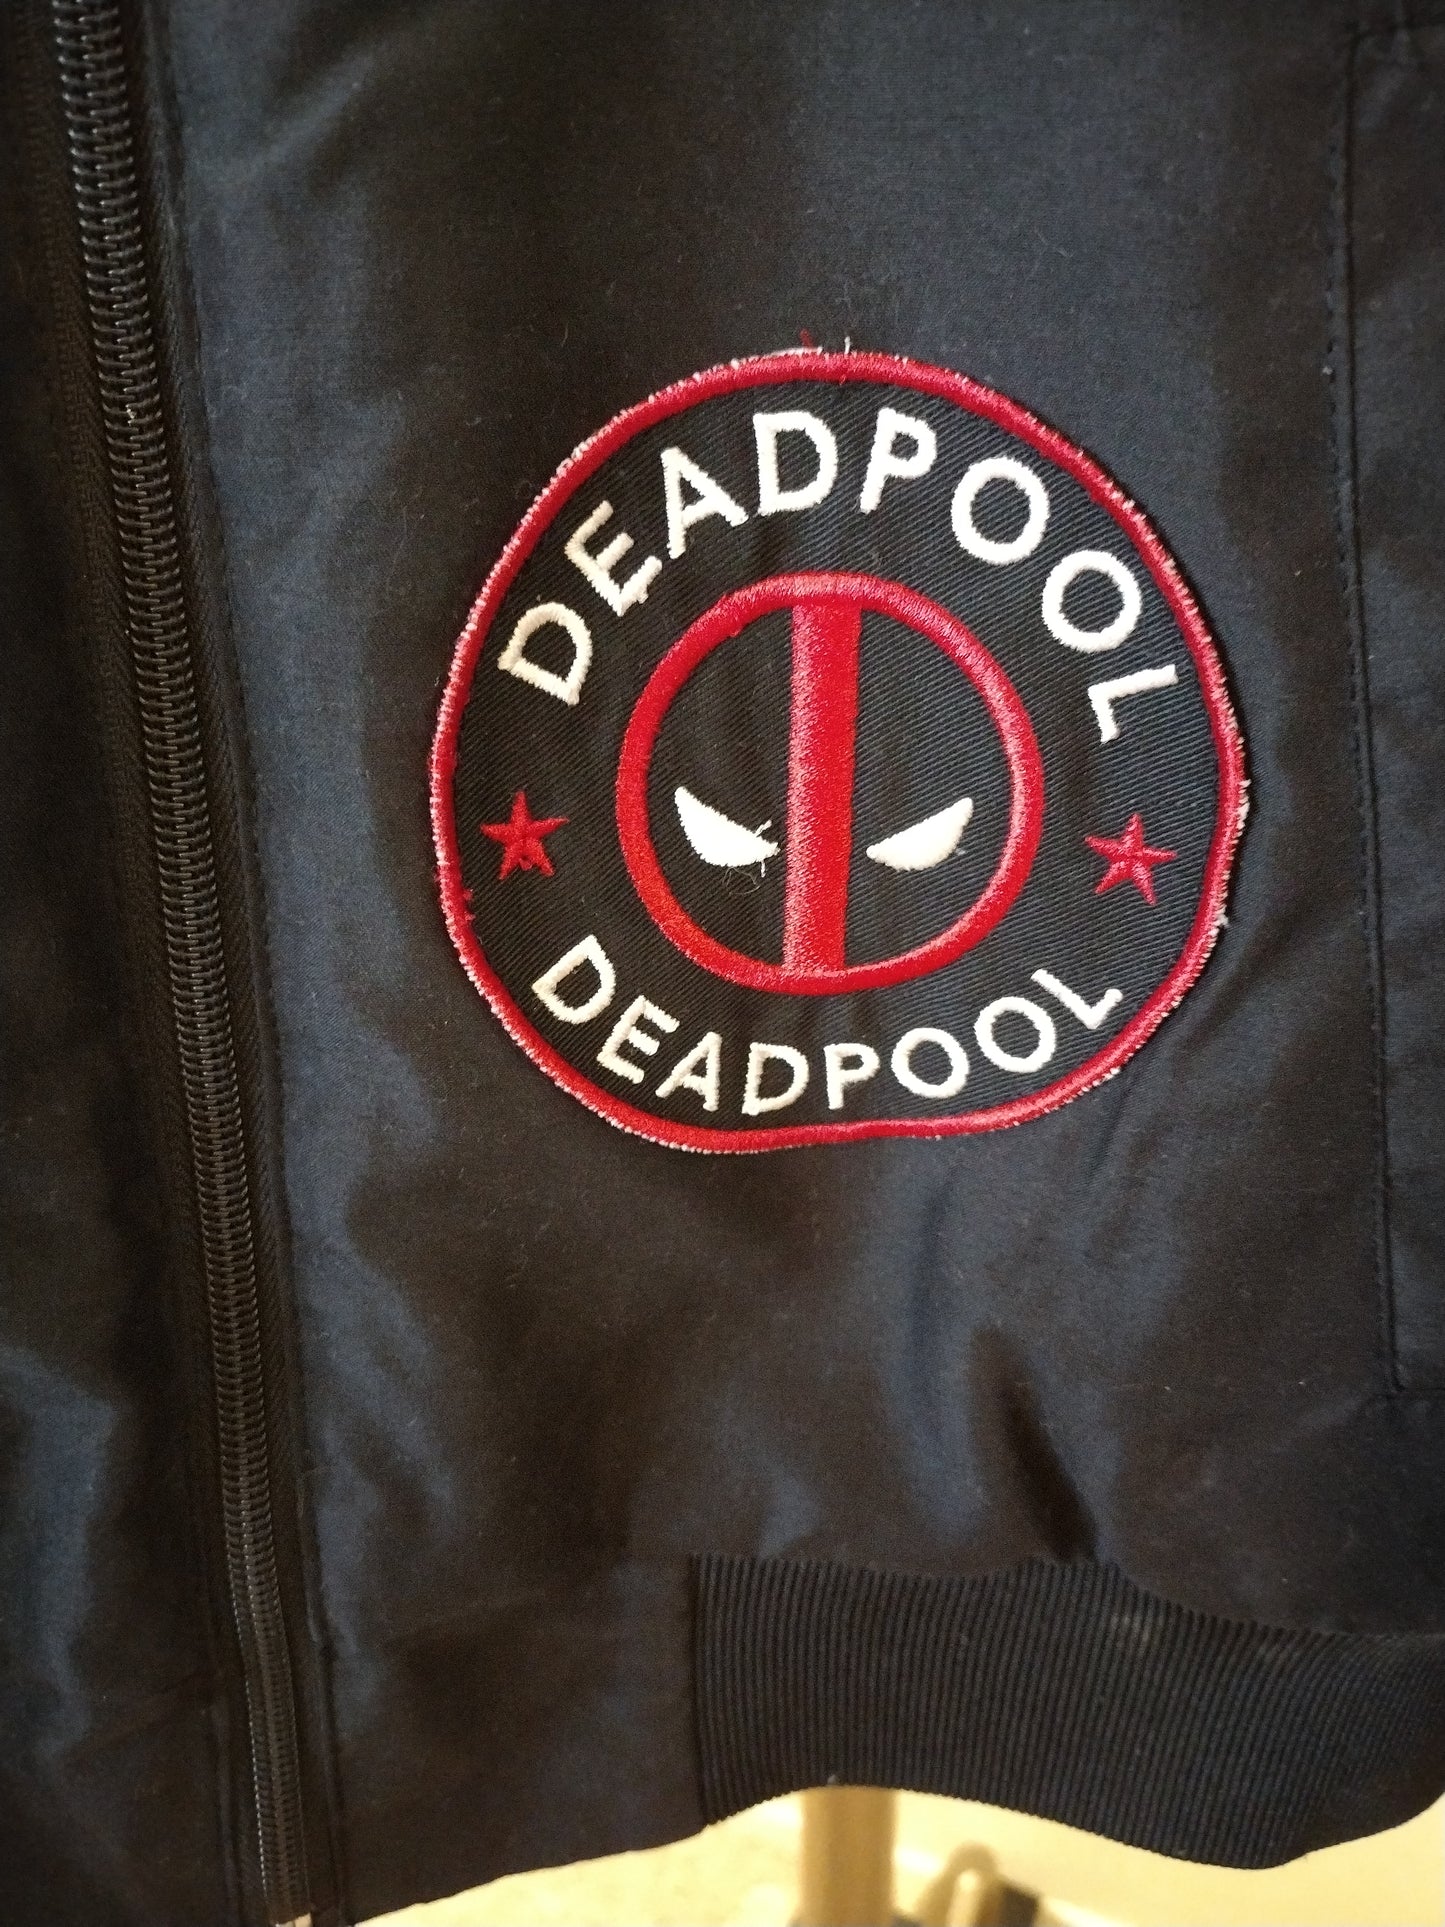 Marvel Deadpool Men's Bomber Jacket Black